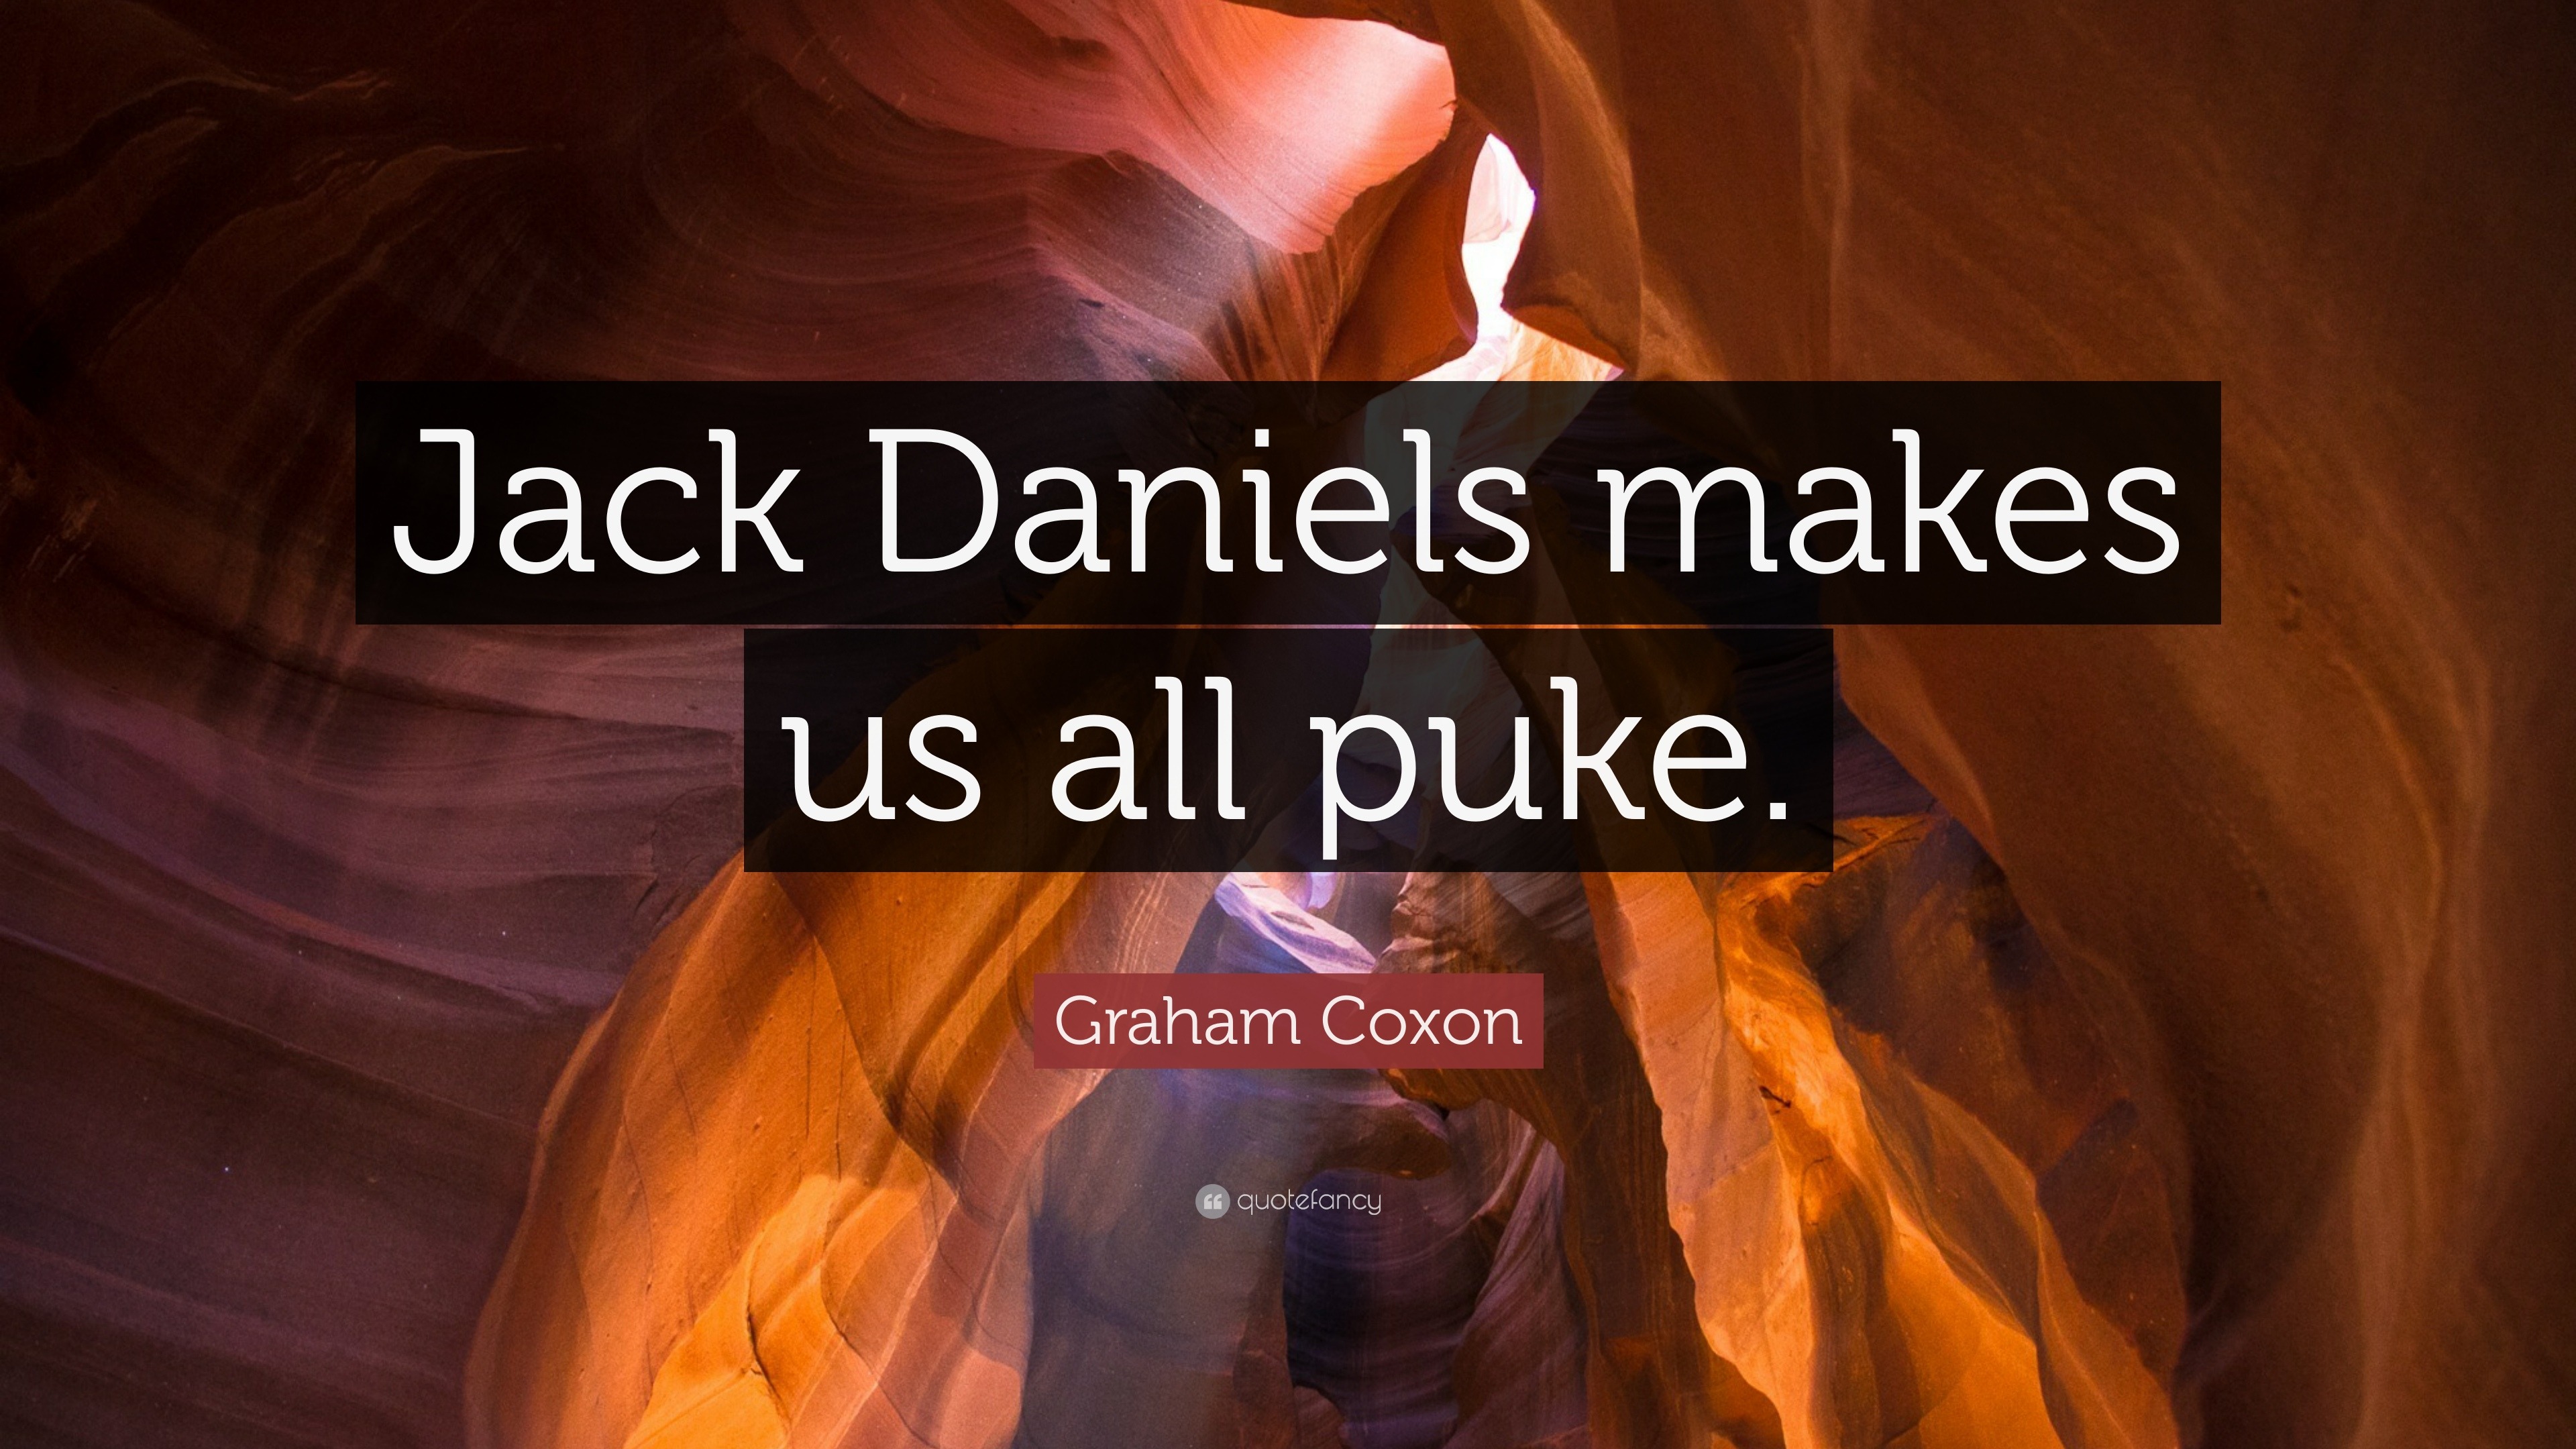 Graham Coxon Quote Jack Daniels Makes Us All Puke 7 Images, Photos, Reviews